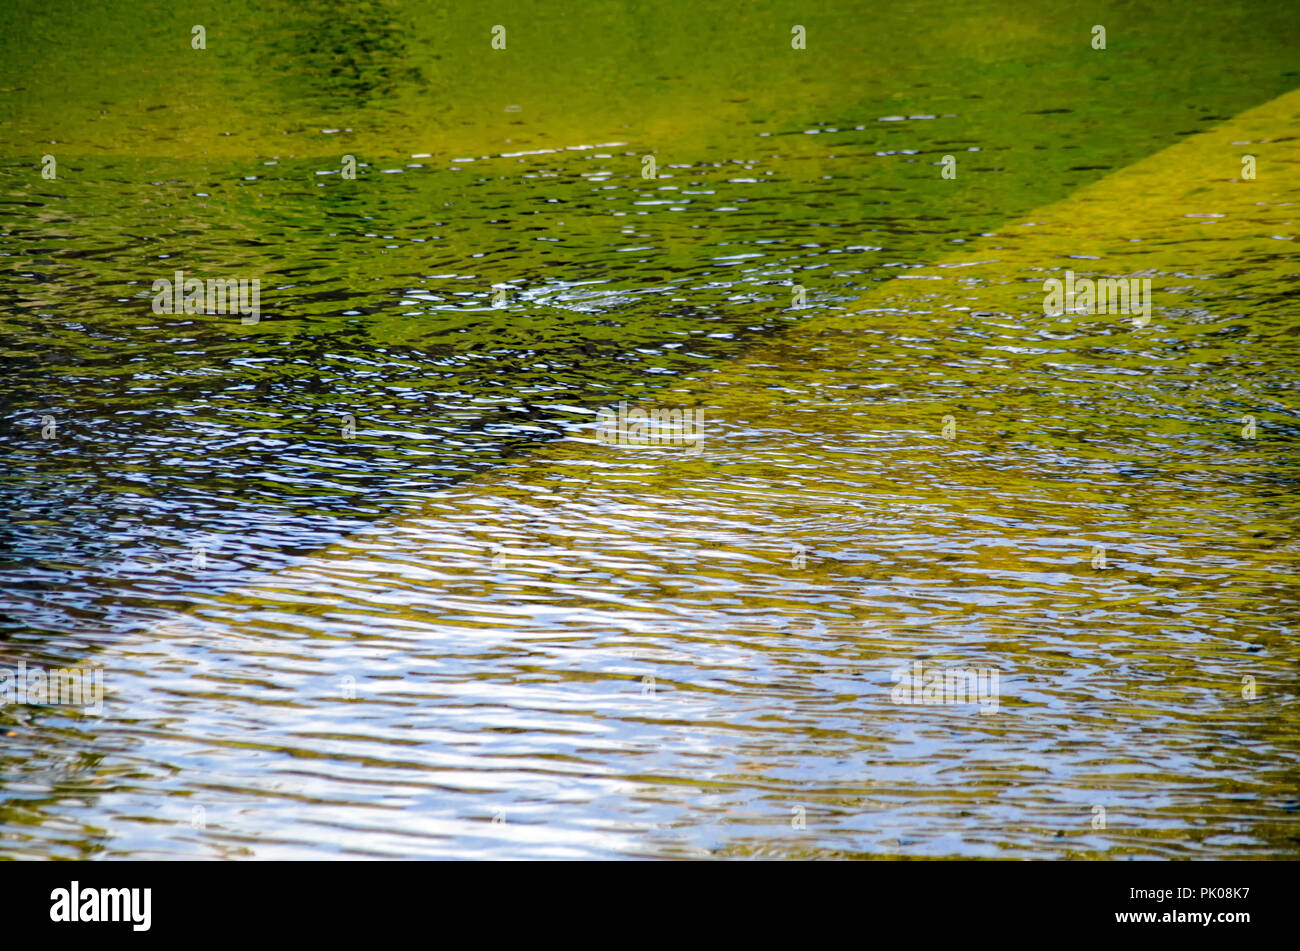 Verde, Oro e ambra colori riflessi nella superficie ondulata di un corpo di acqua, lo sfondo per la visualizzazione di due. Foto Stock